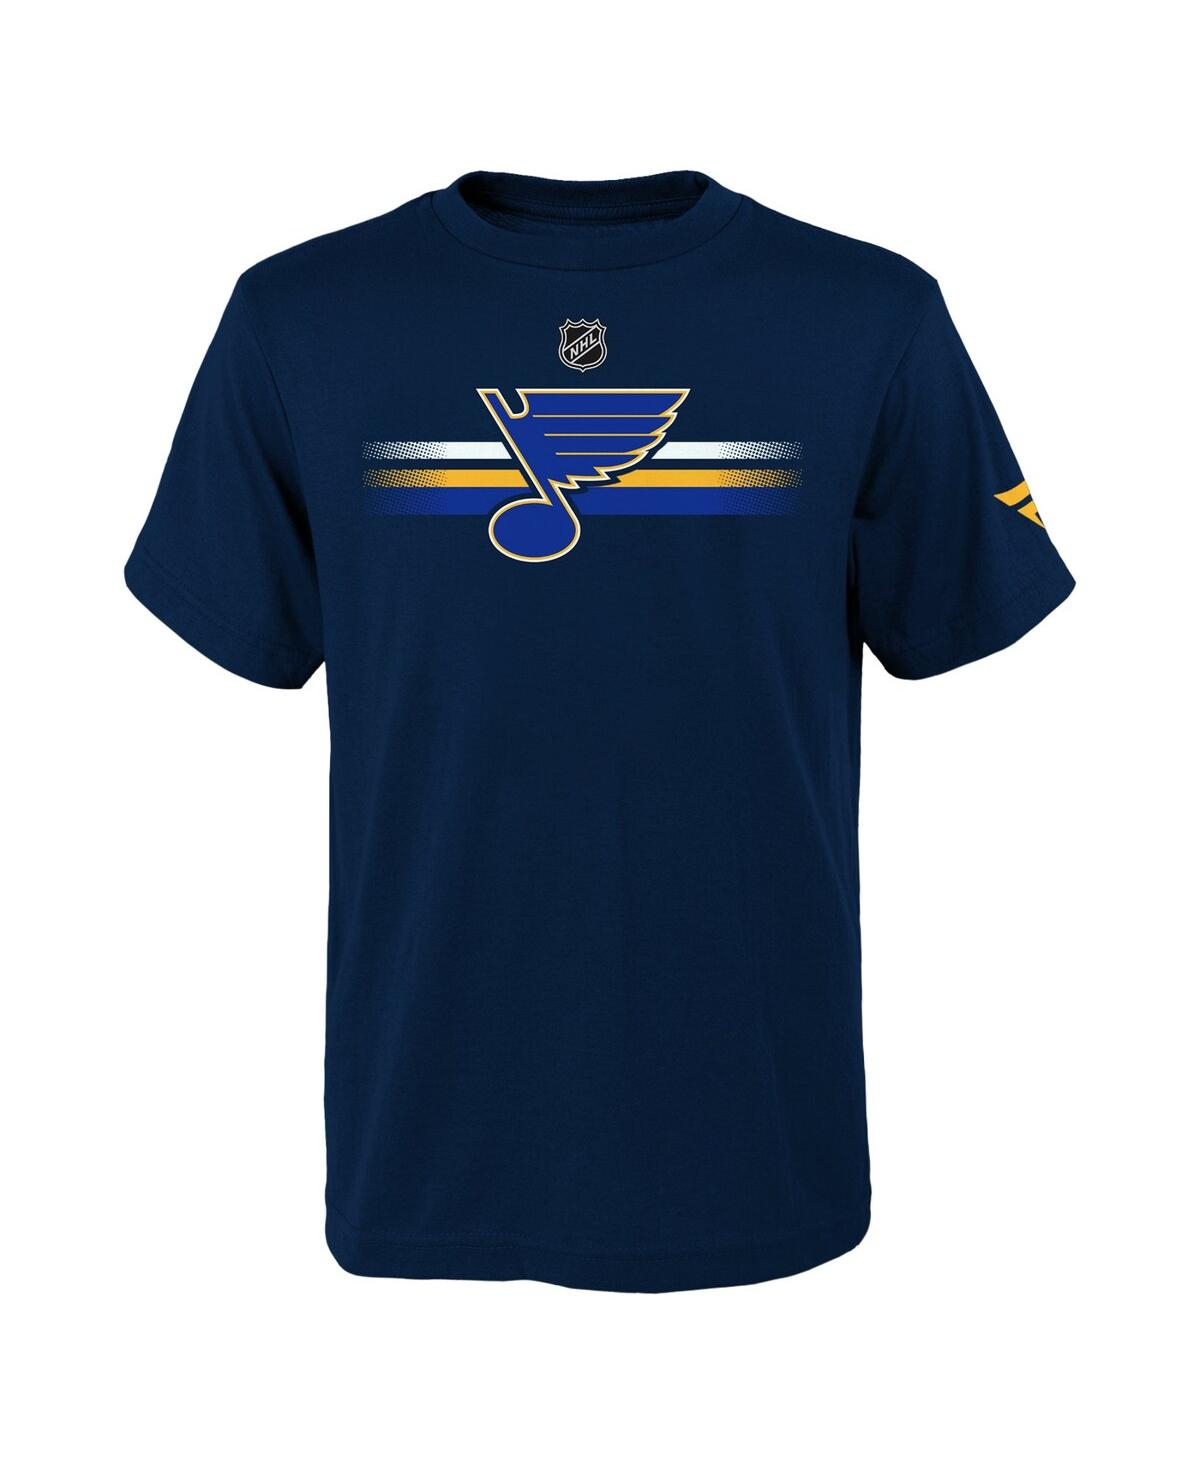 Outerstuff Kids' Big Boys Fanatics Branded Navy St. Louis Blues Authentic Pro Logo T-shirt